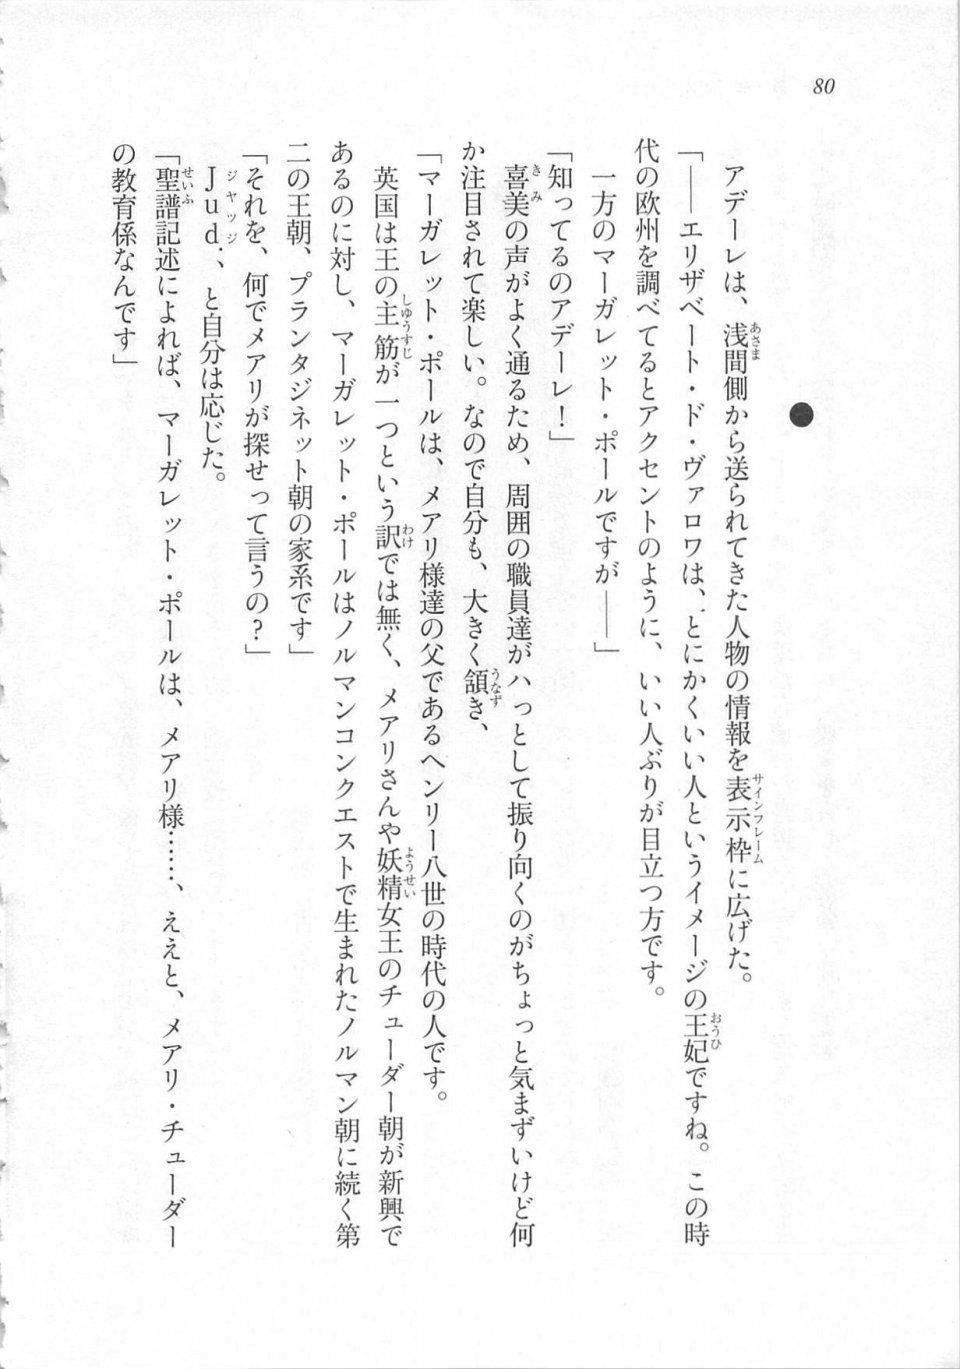 Kyoukai Senjou no Horizon LN Sidestory Vol 3 - Photo #84